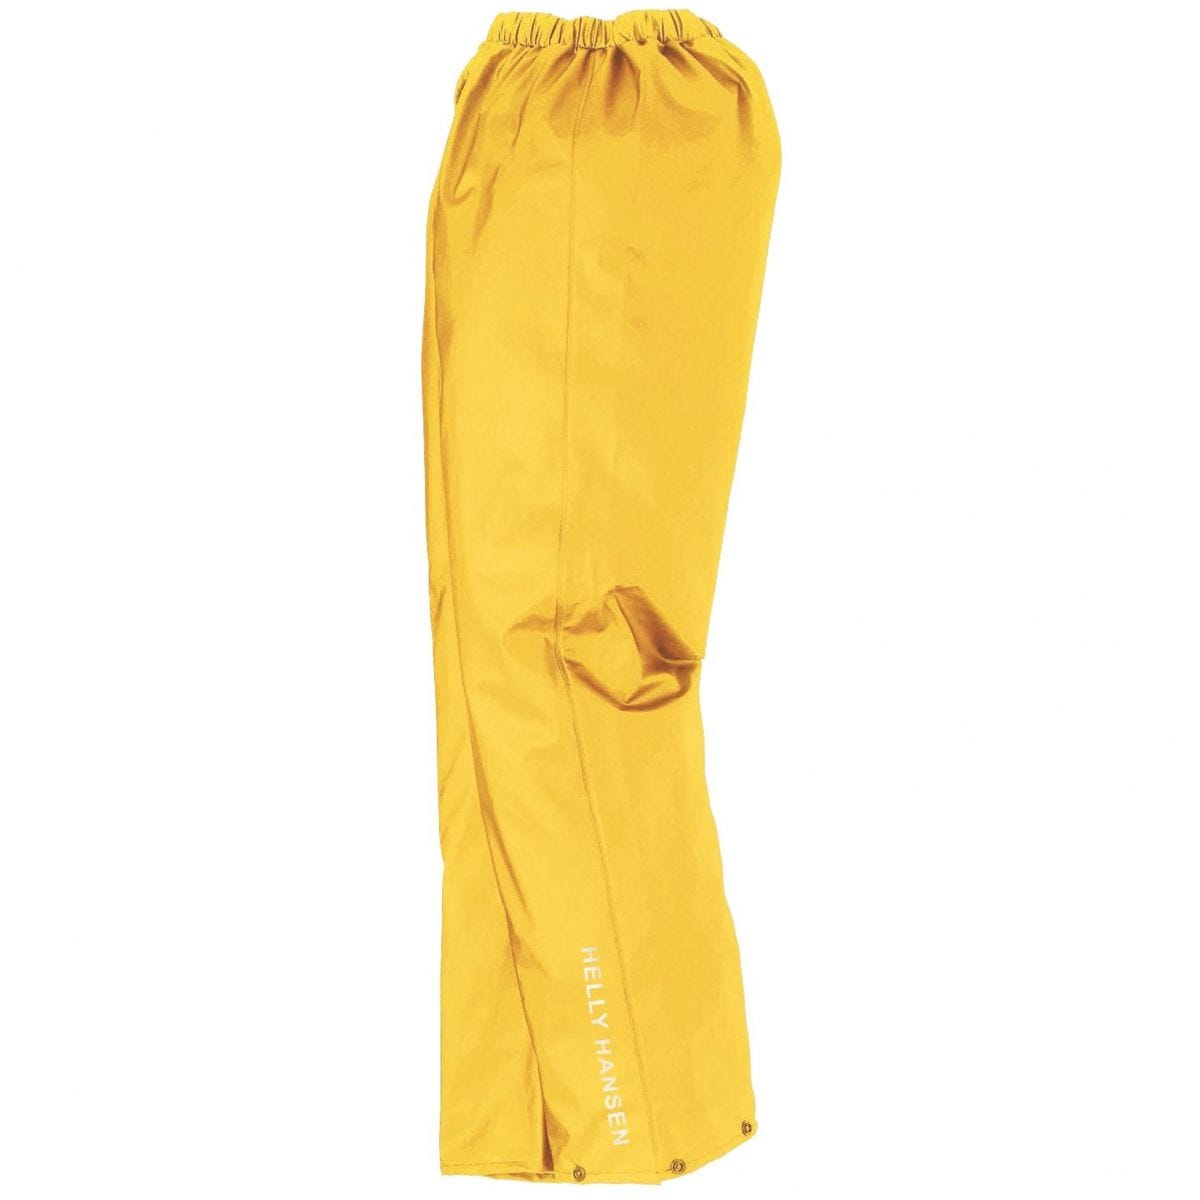 Pantalon de pluie imperméable Voss jaune - Helly Hansen - Taille L 0